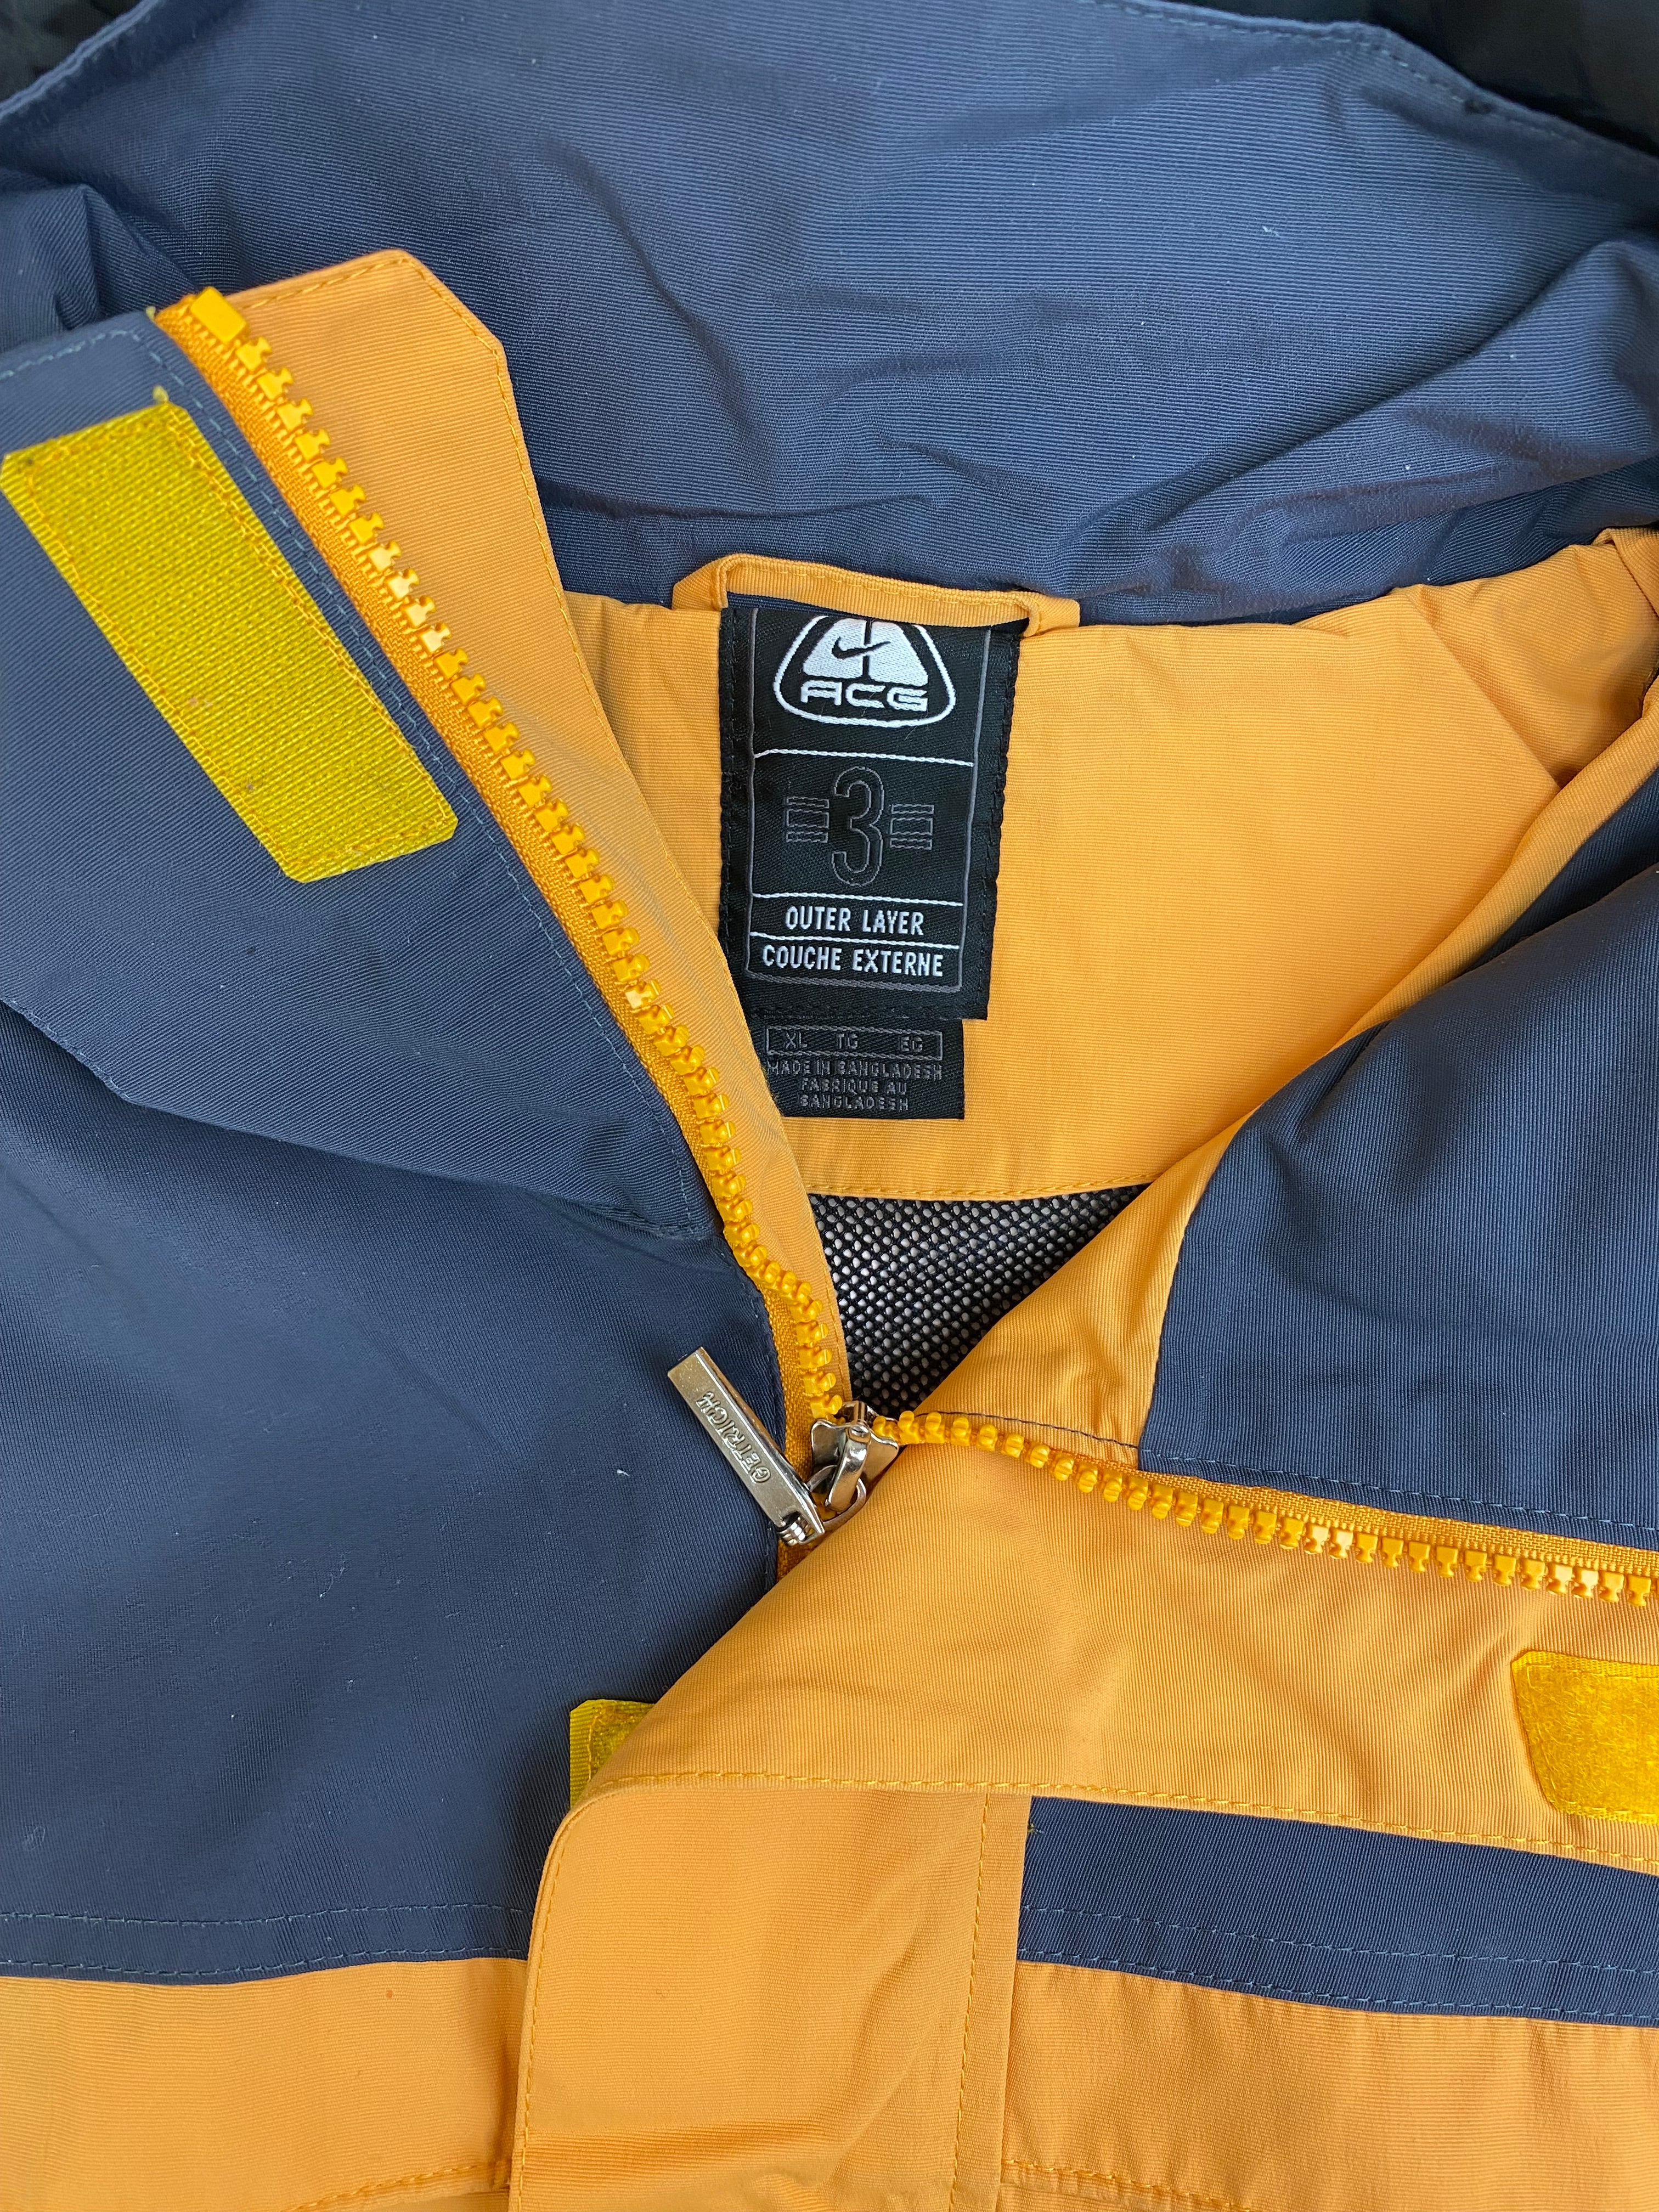 Vintage Nike ACG Ski Jacket Yellow